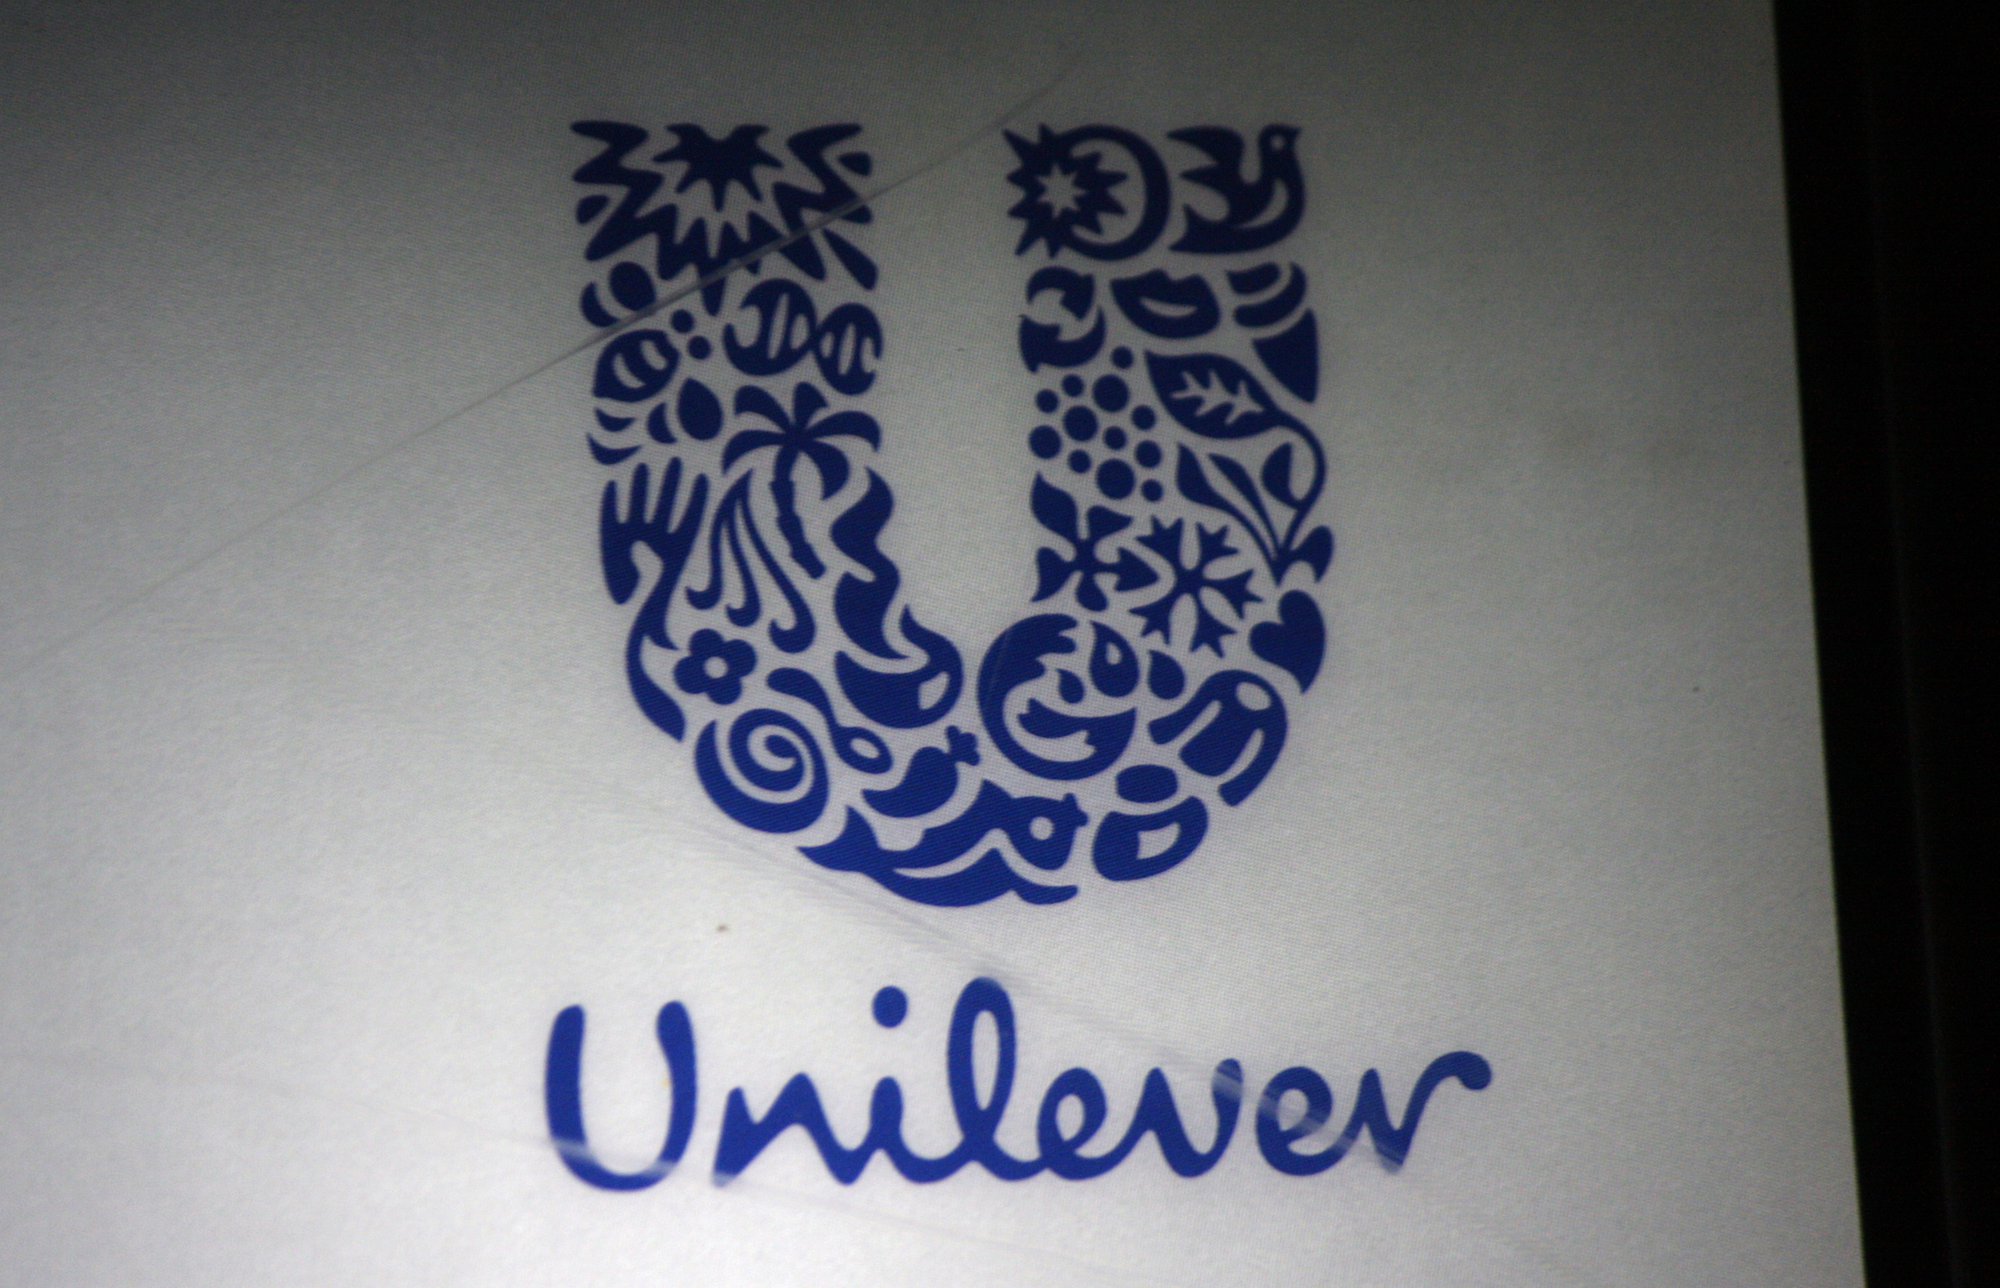 Test met vierdagenweek bij Unilever in Nieuw-Zeeland